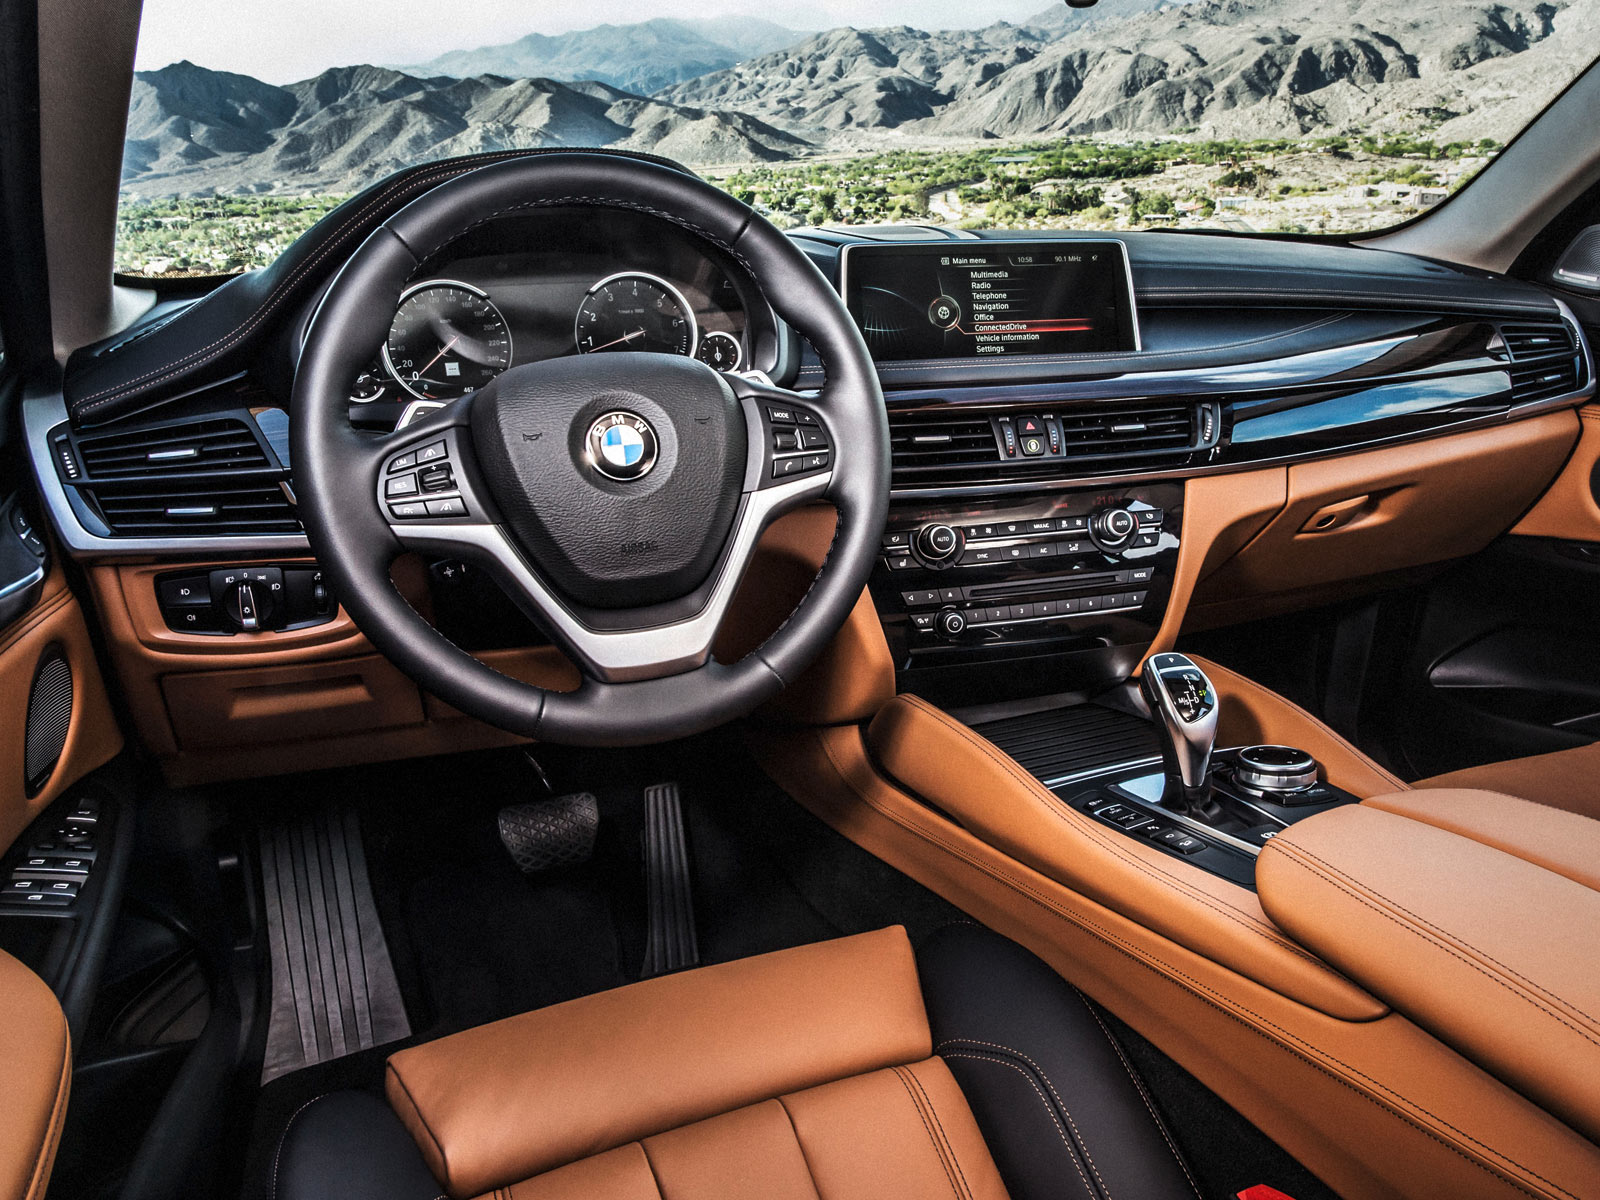 2014 BMW X6 (c) BMW